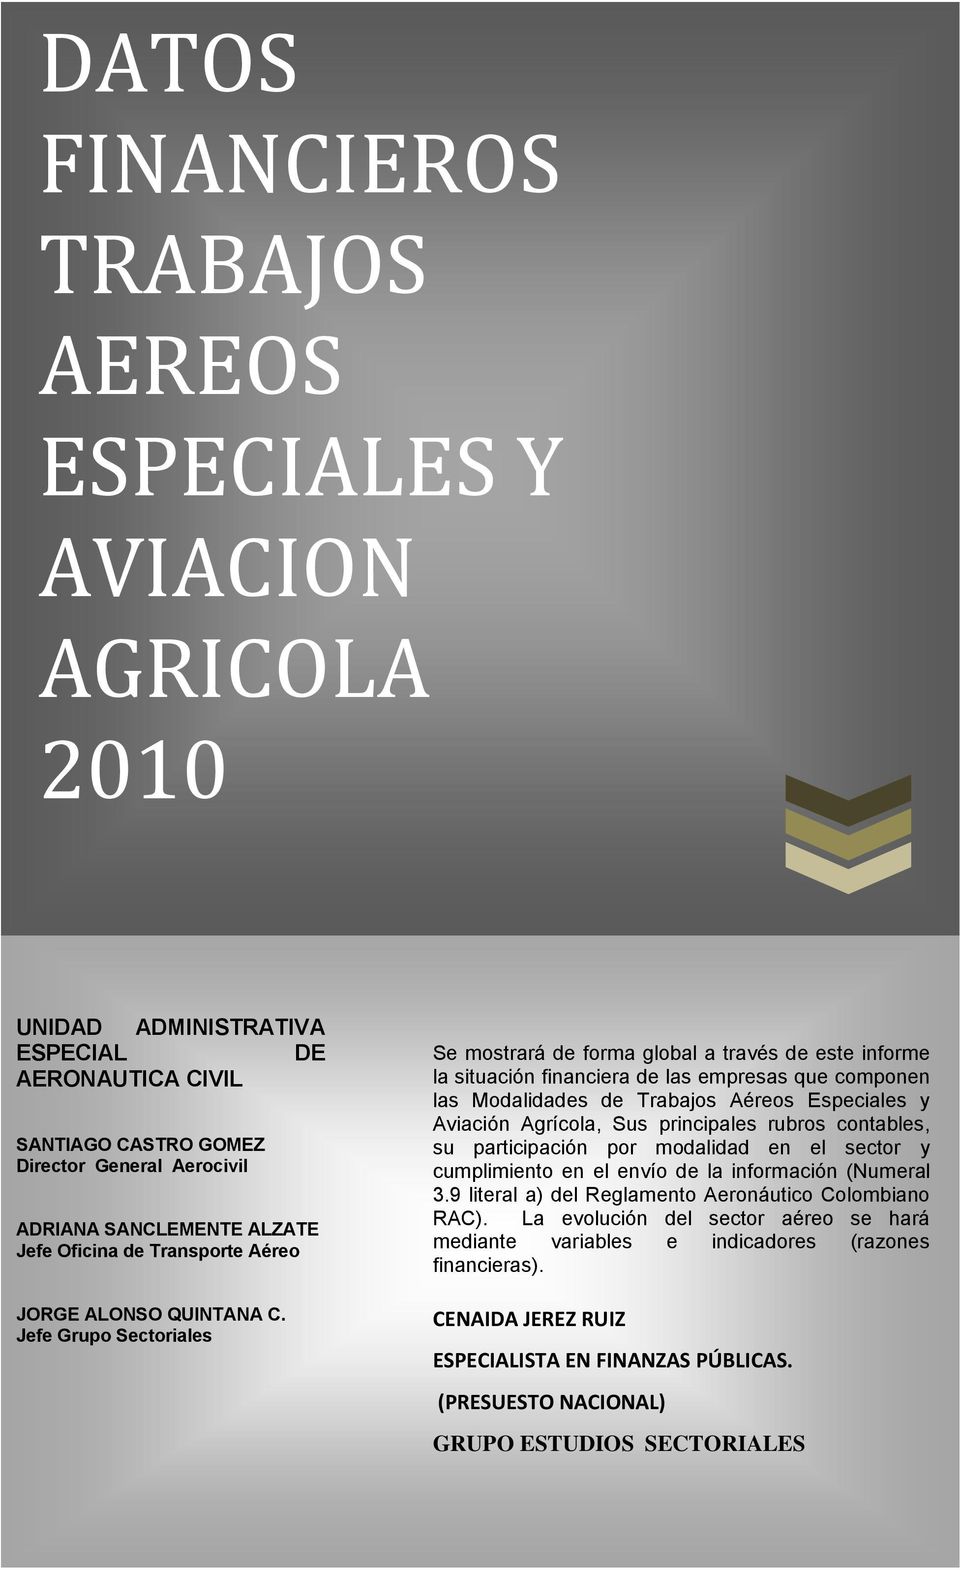 Jefe Grupo Sectoriales Se mostrará de forma global a través de este informe la situación financiera de las empresas que componen las Modalidades de Trabajos Aéreos Especiales y Aviación Agrícola, Sus